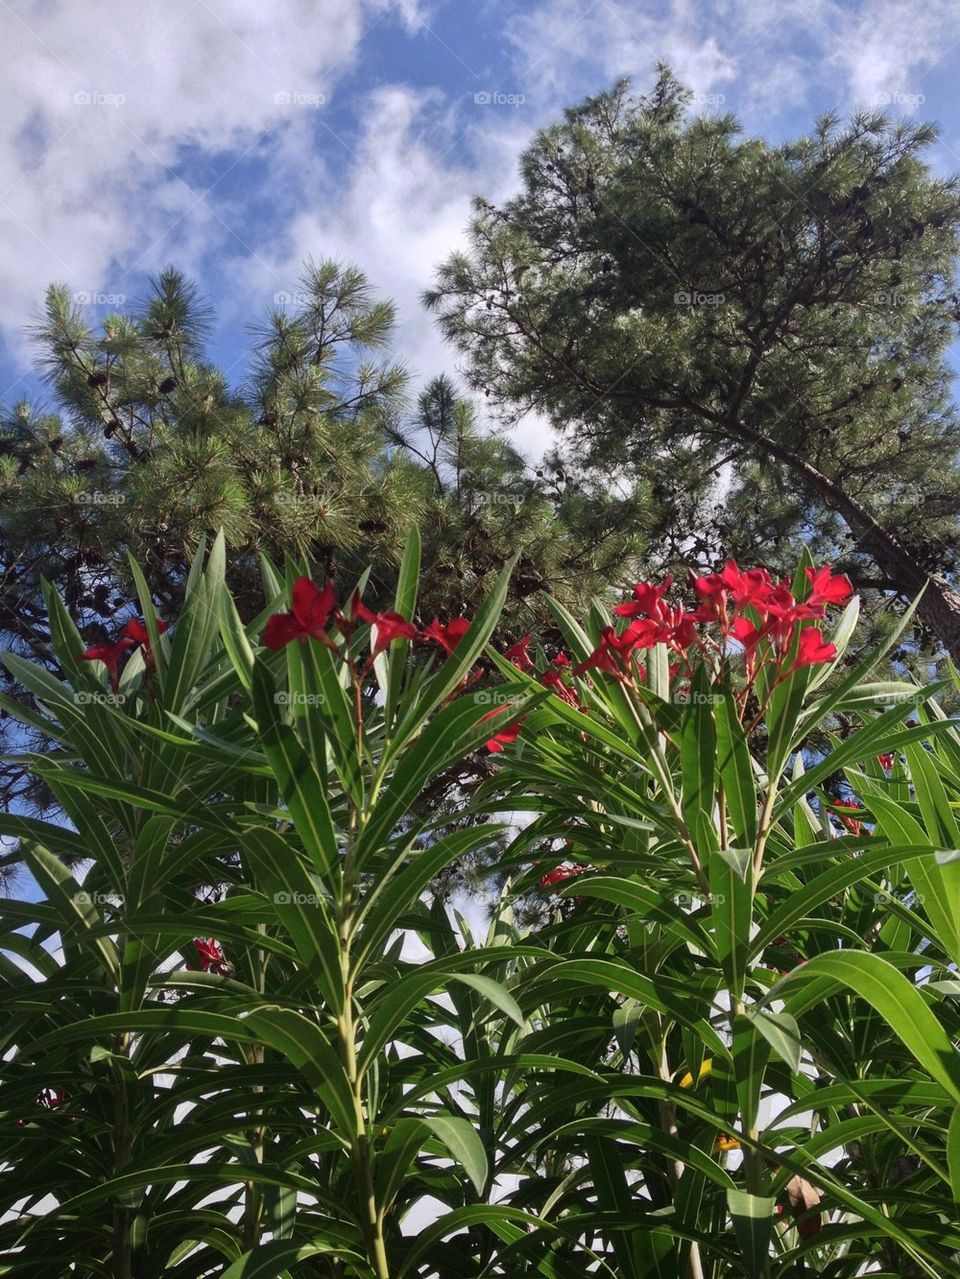 Flowers vs pines